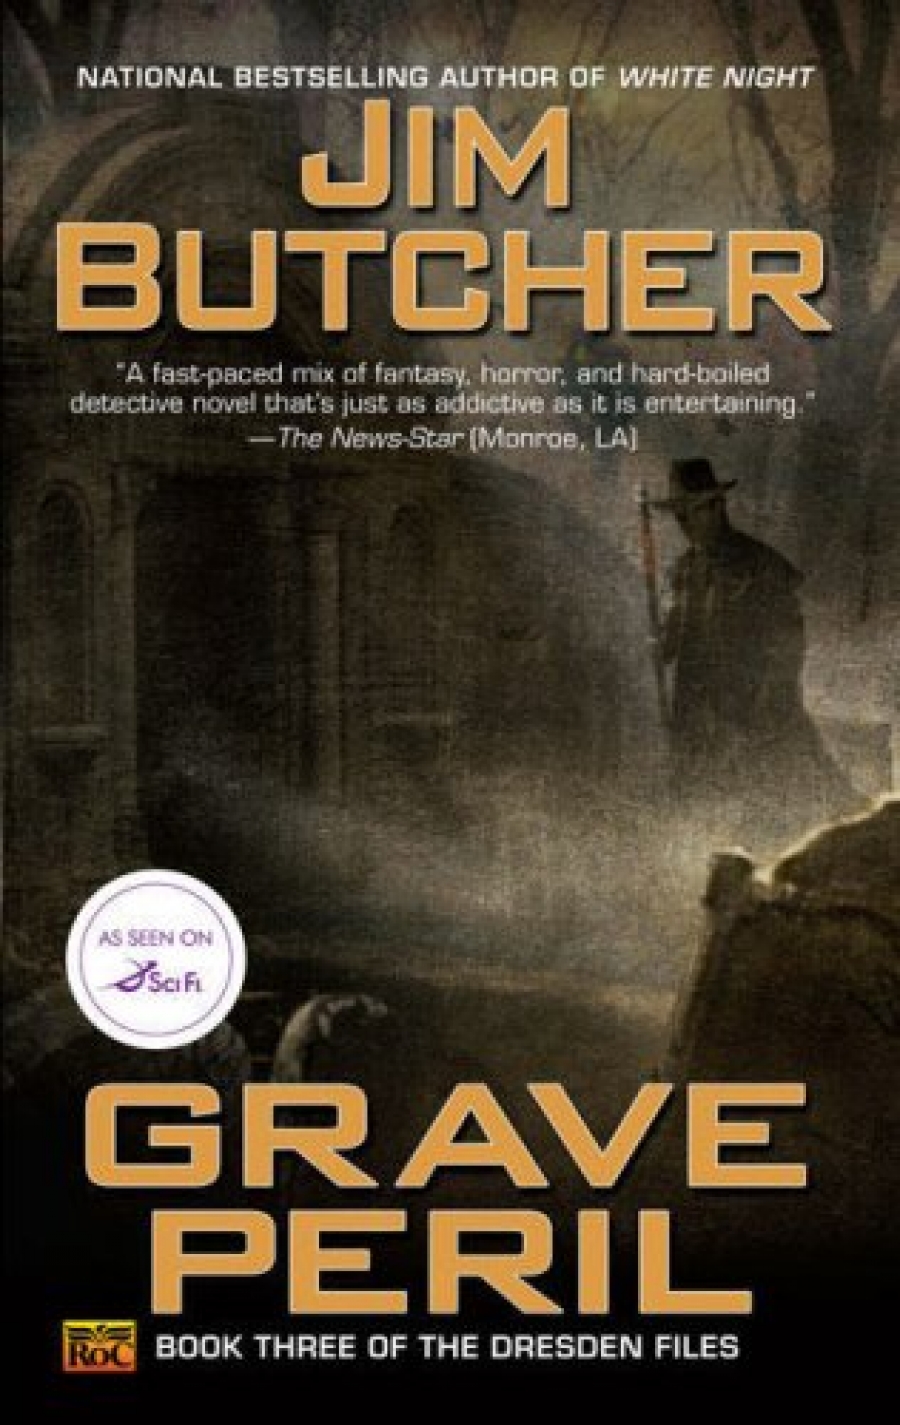 Butcher, Jim Dresden Files 3: Grave Peril 